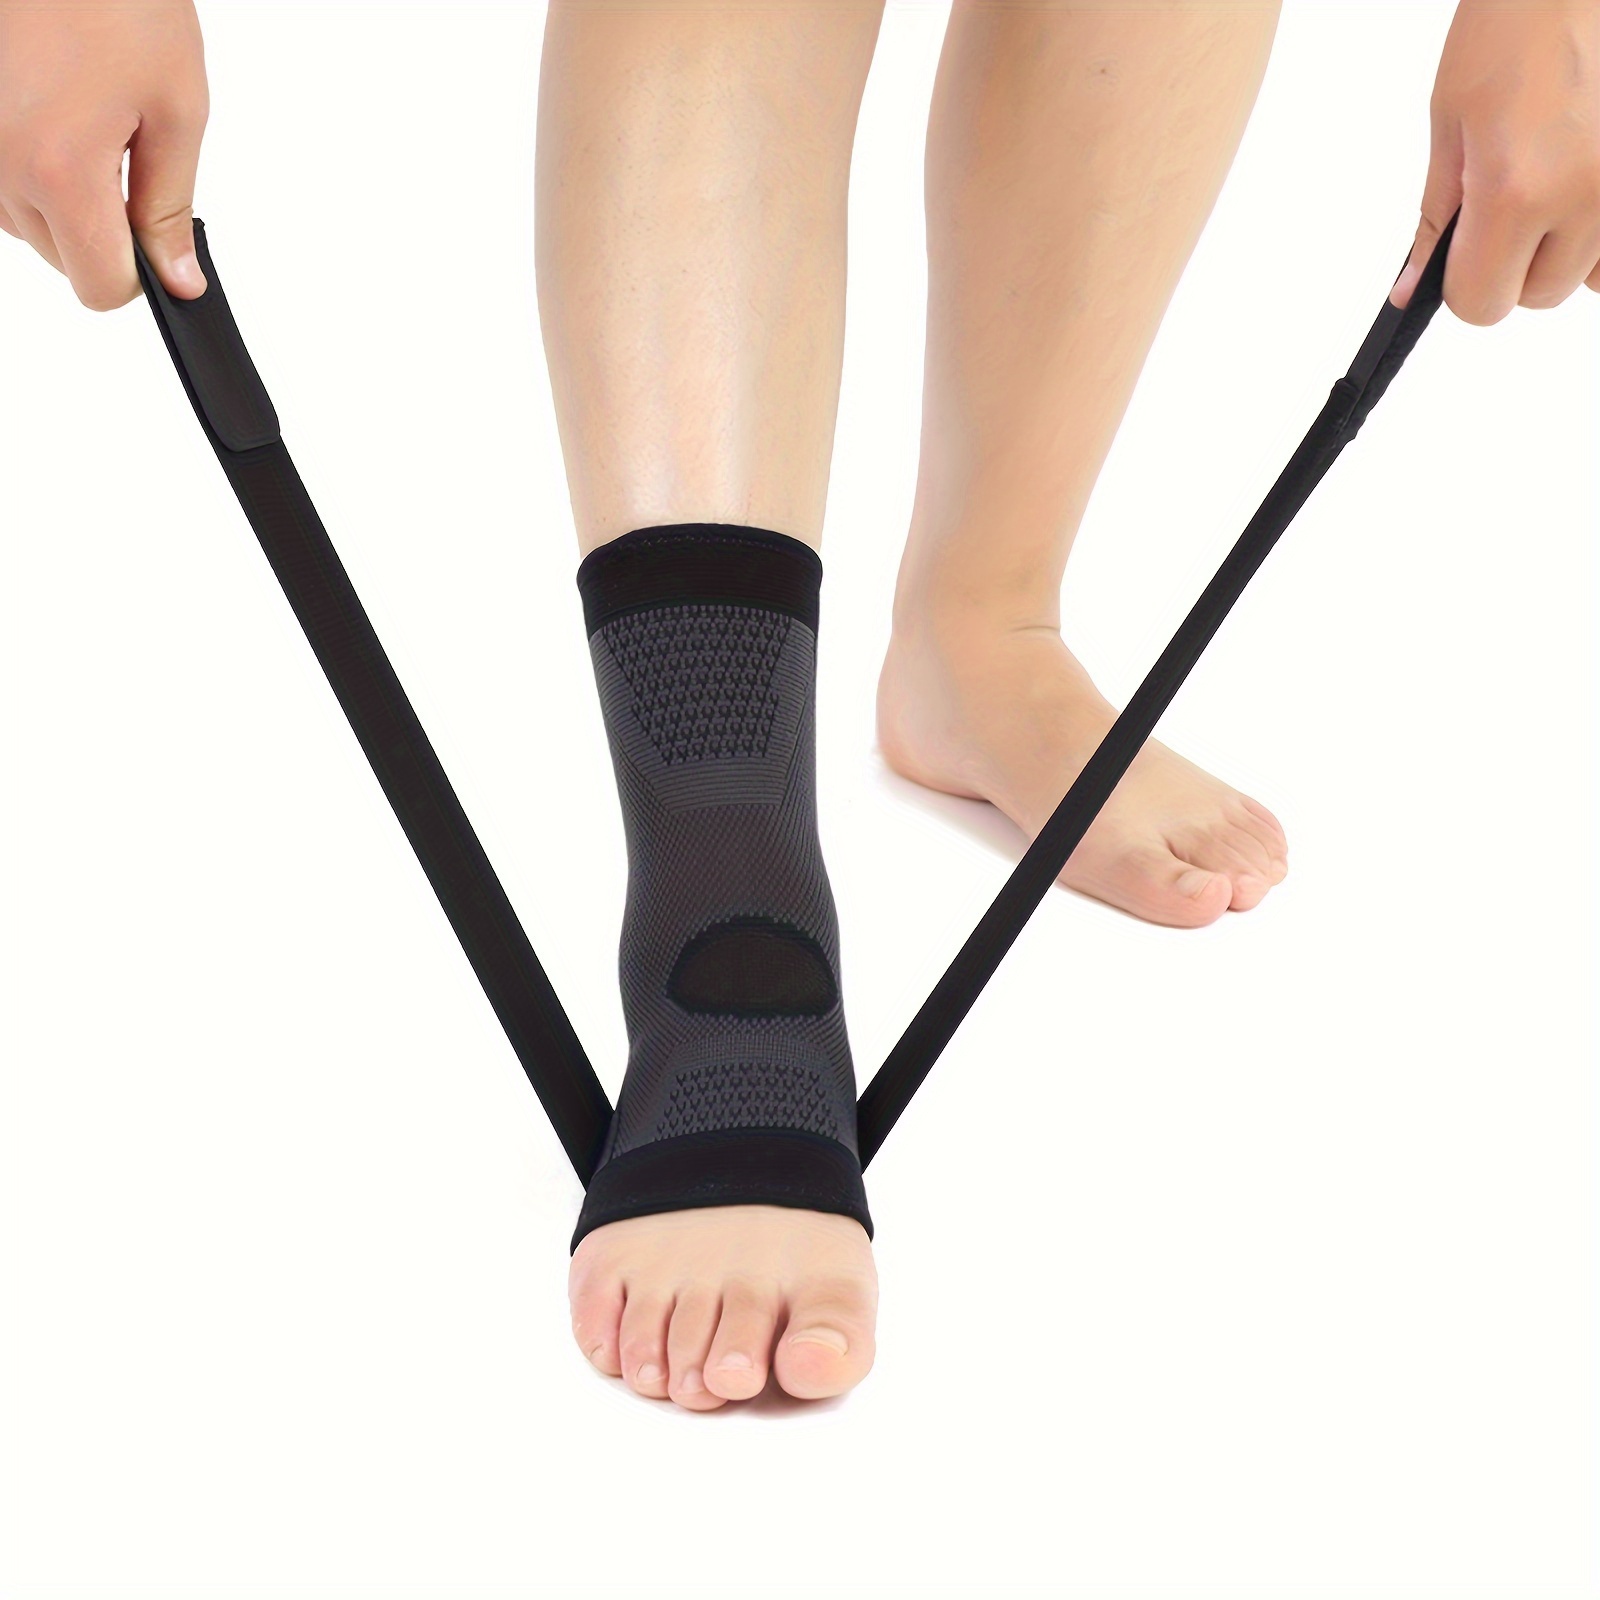 Tobillera estabilizadora de encaje, para mujeres y hombres, transpirable,  ajustable, soporte de pie para deporte, esguince de tobillo, recuperación  de